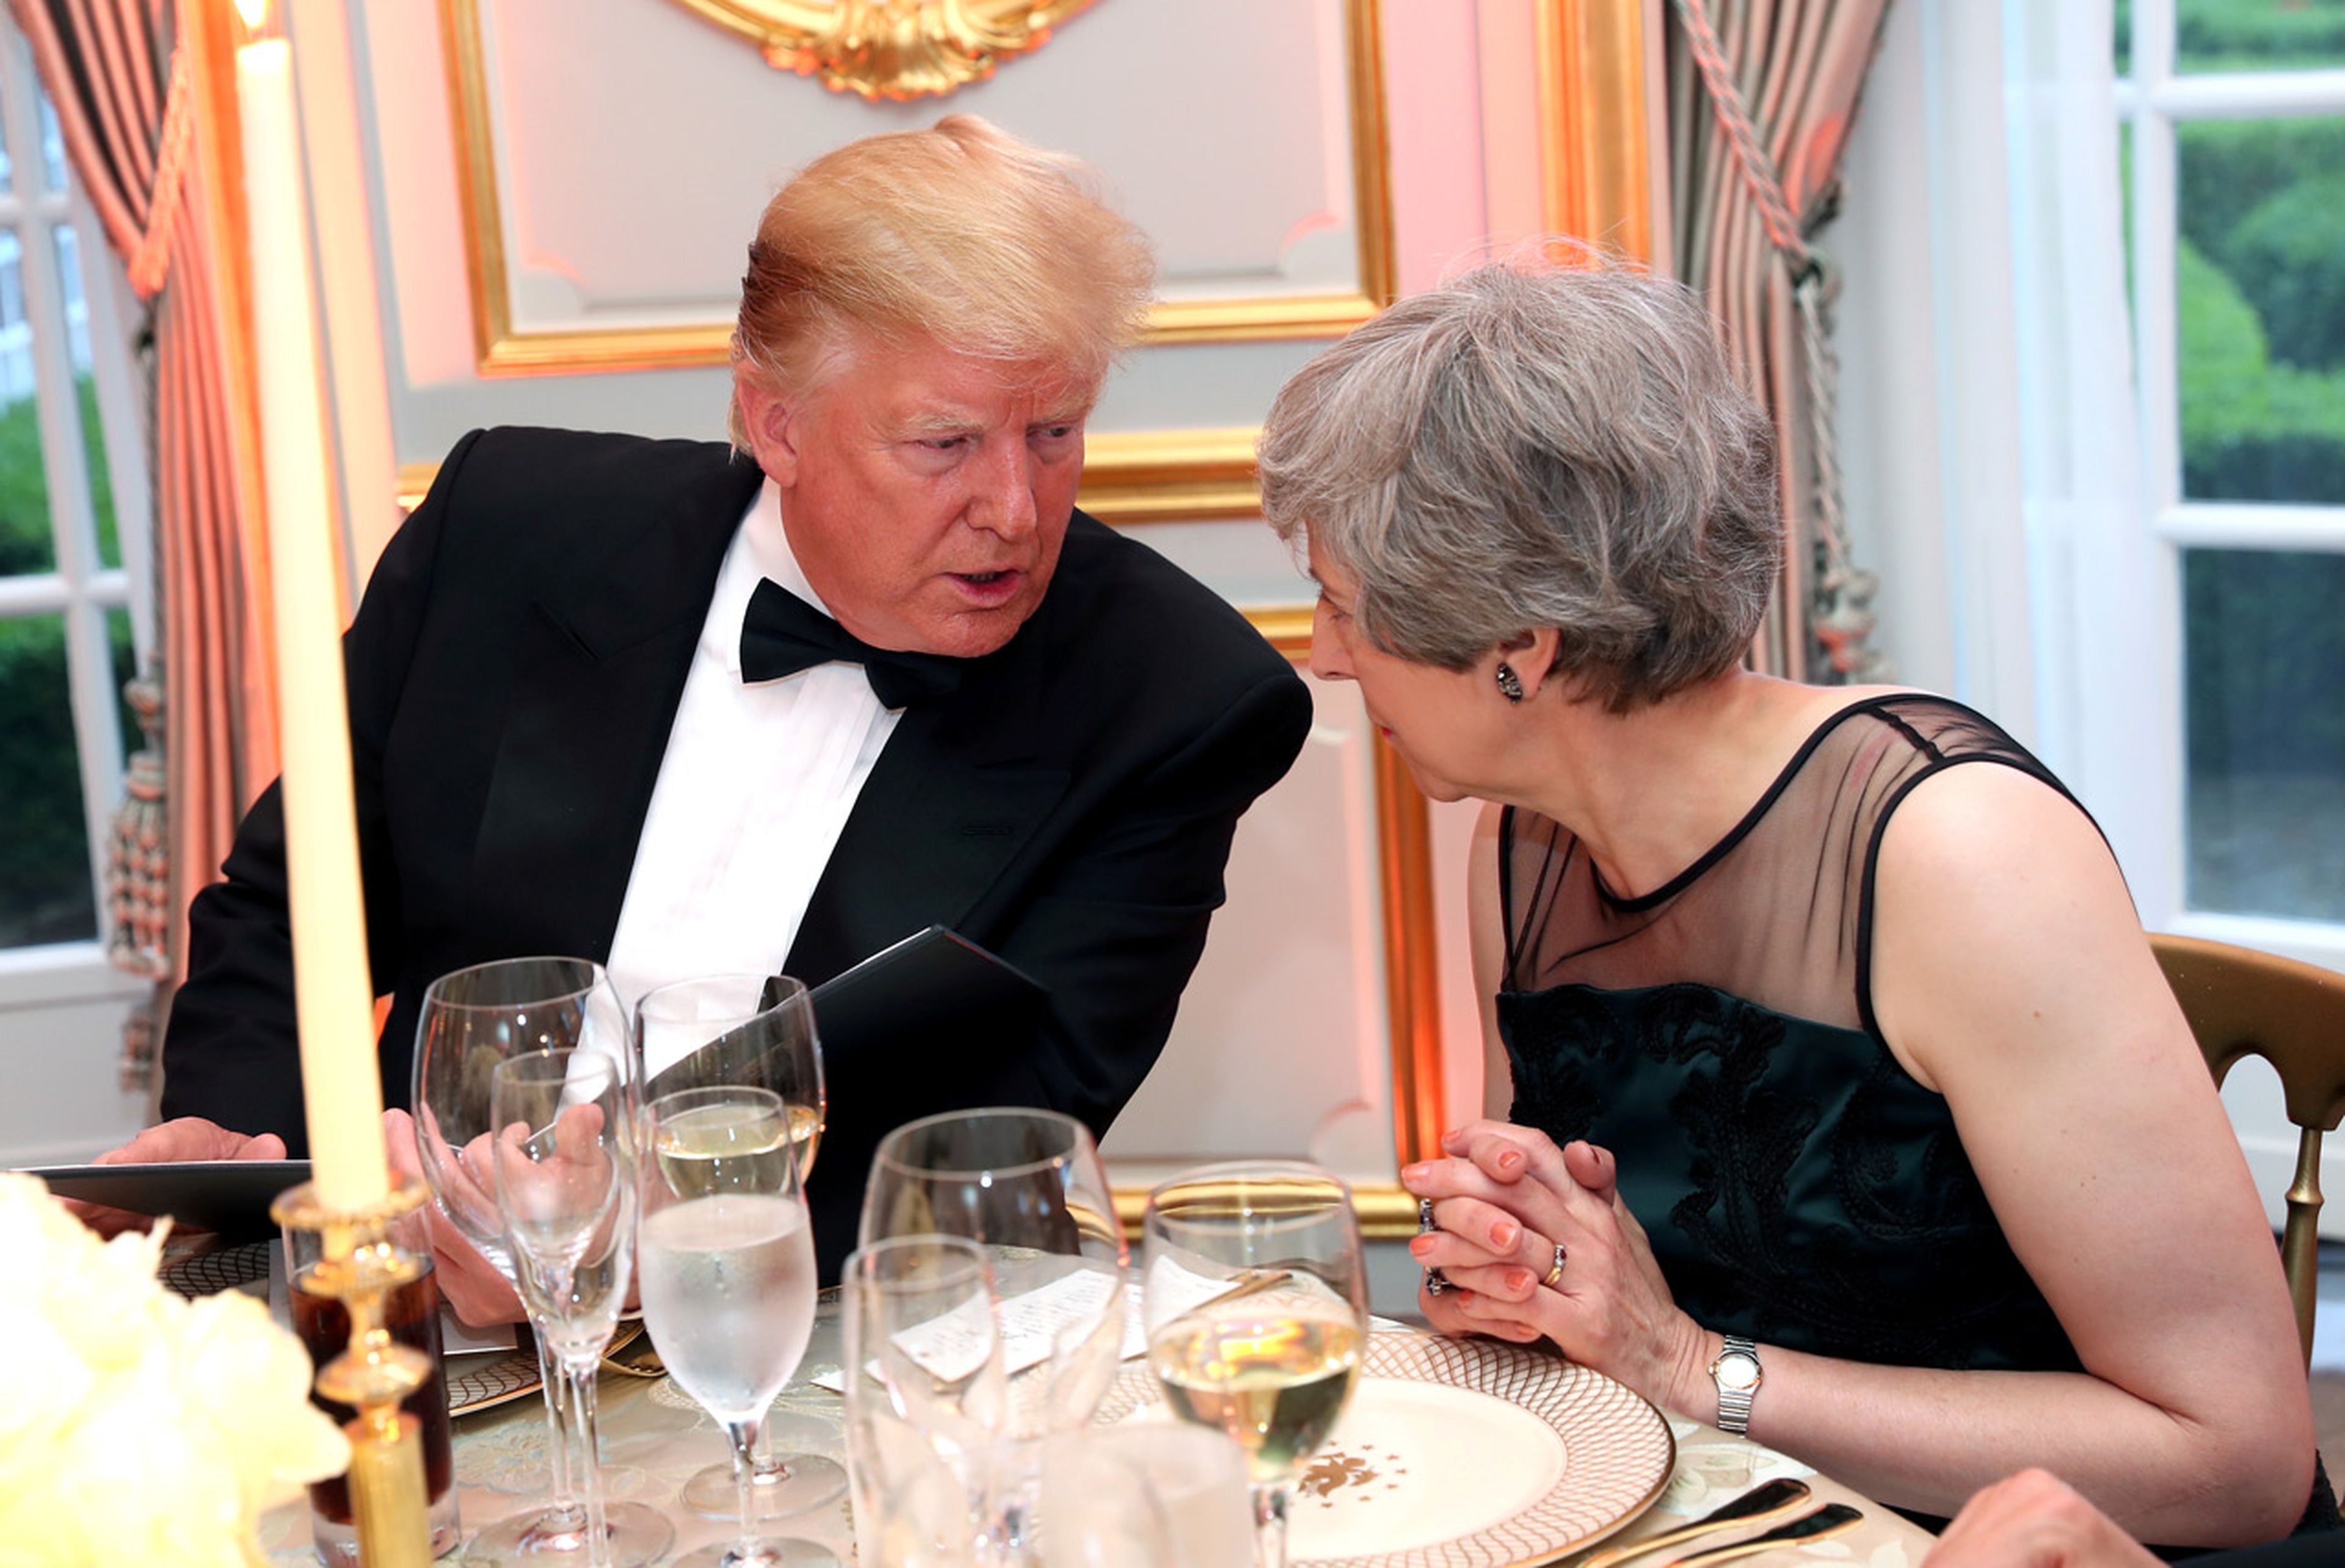 El presidente de Estados Unidos, Donald Trump, y la primera ministra británica, Theresa May, hablan en una cena auspiciada por él y la primera dama Melania Trump en Winfield House, durante su visita de estado a Reino Unido.